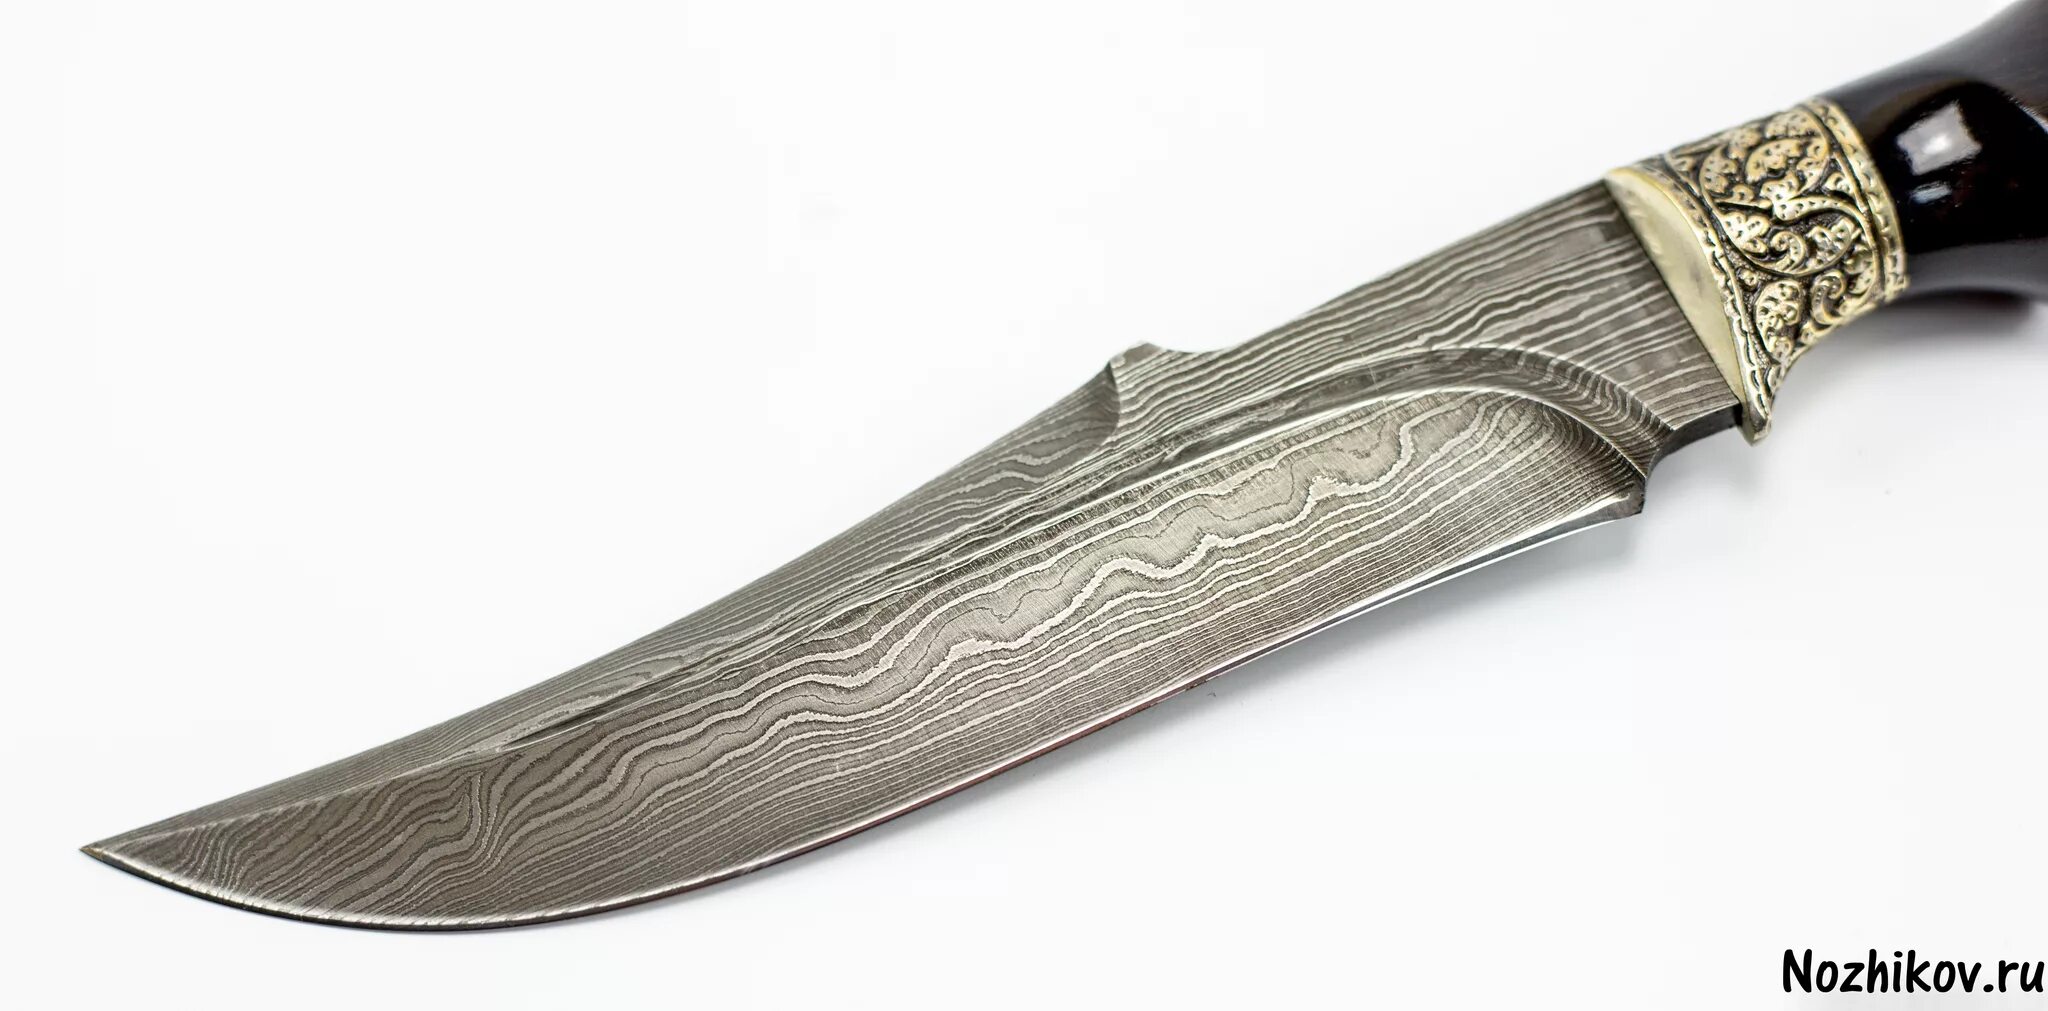 Кизлярские ножи дамасская сталь. Нож Кизляр Дамаск. Кухонный нож Кизляр дамасская сталь. Ножи Кизляр из Дамаска. Заказ кизляр